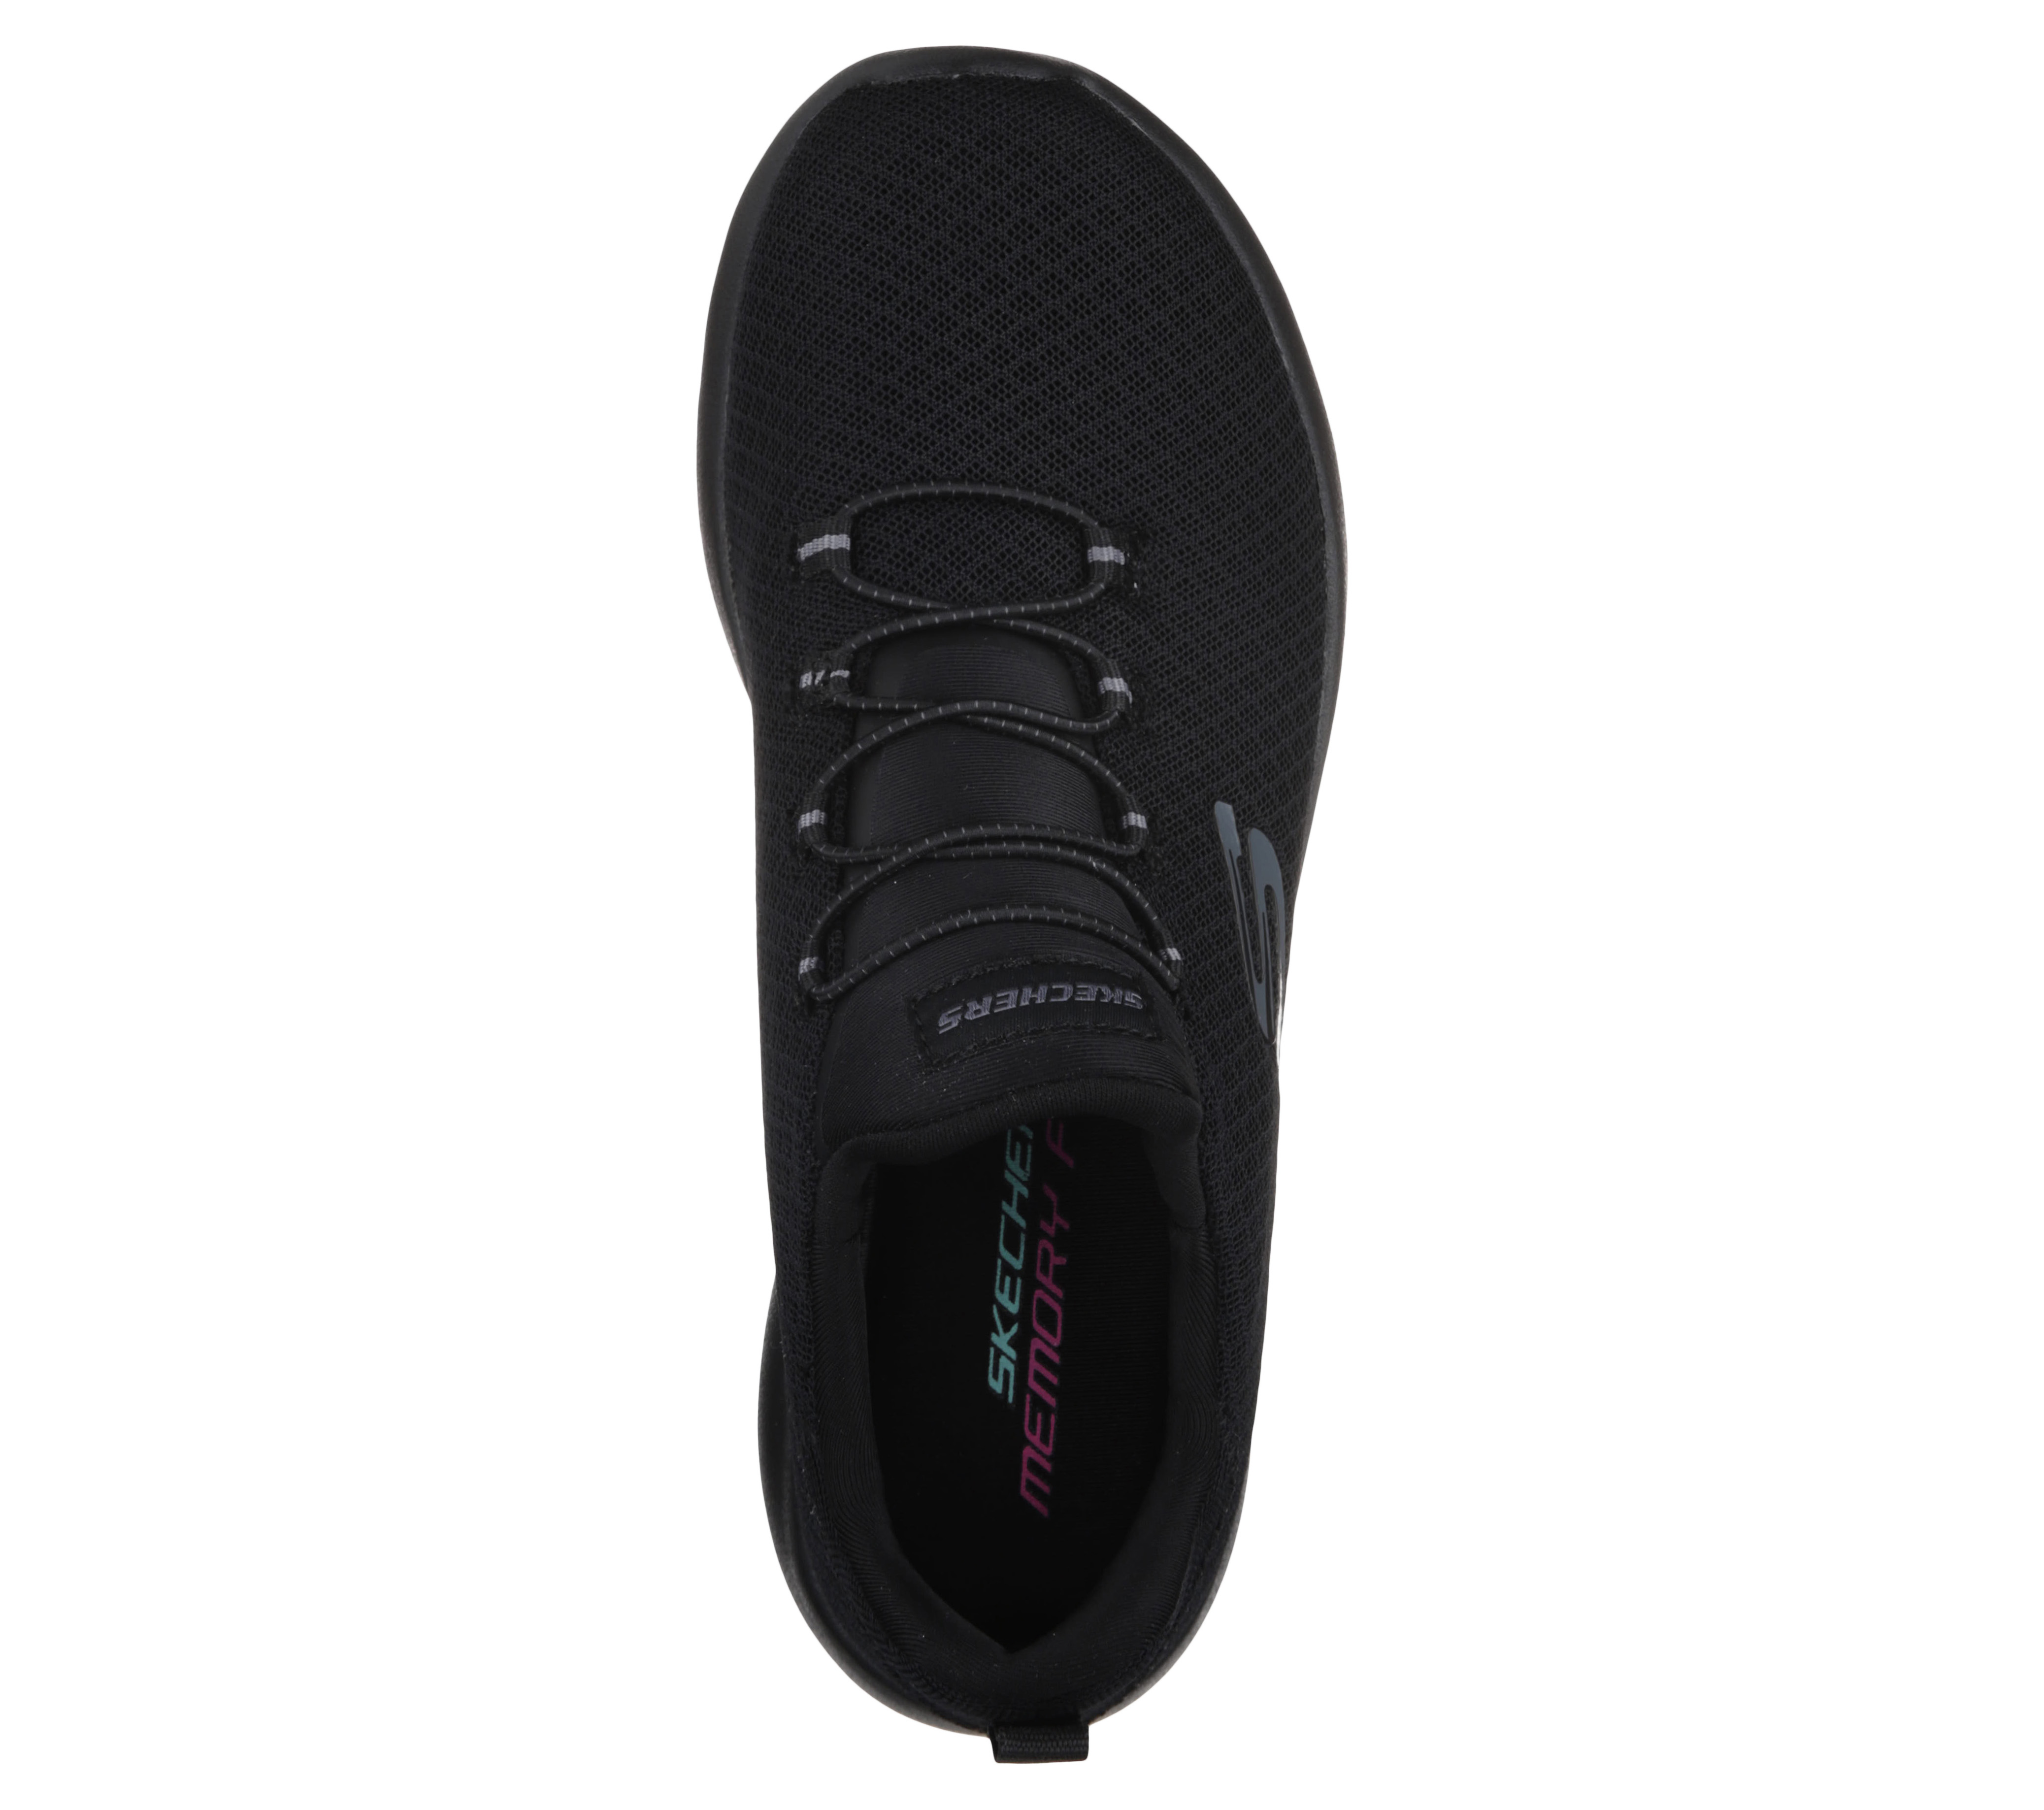 skechers men's dynamight black walking shoes